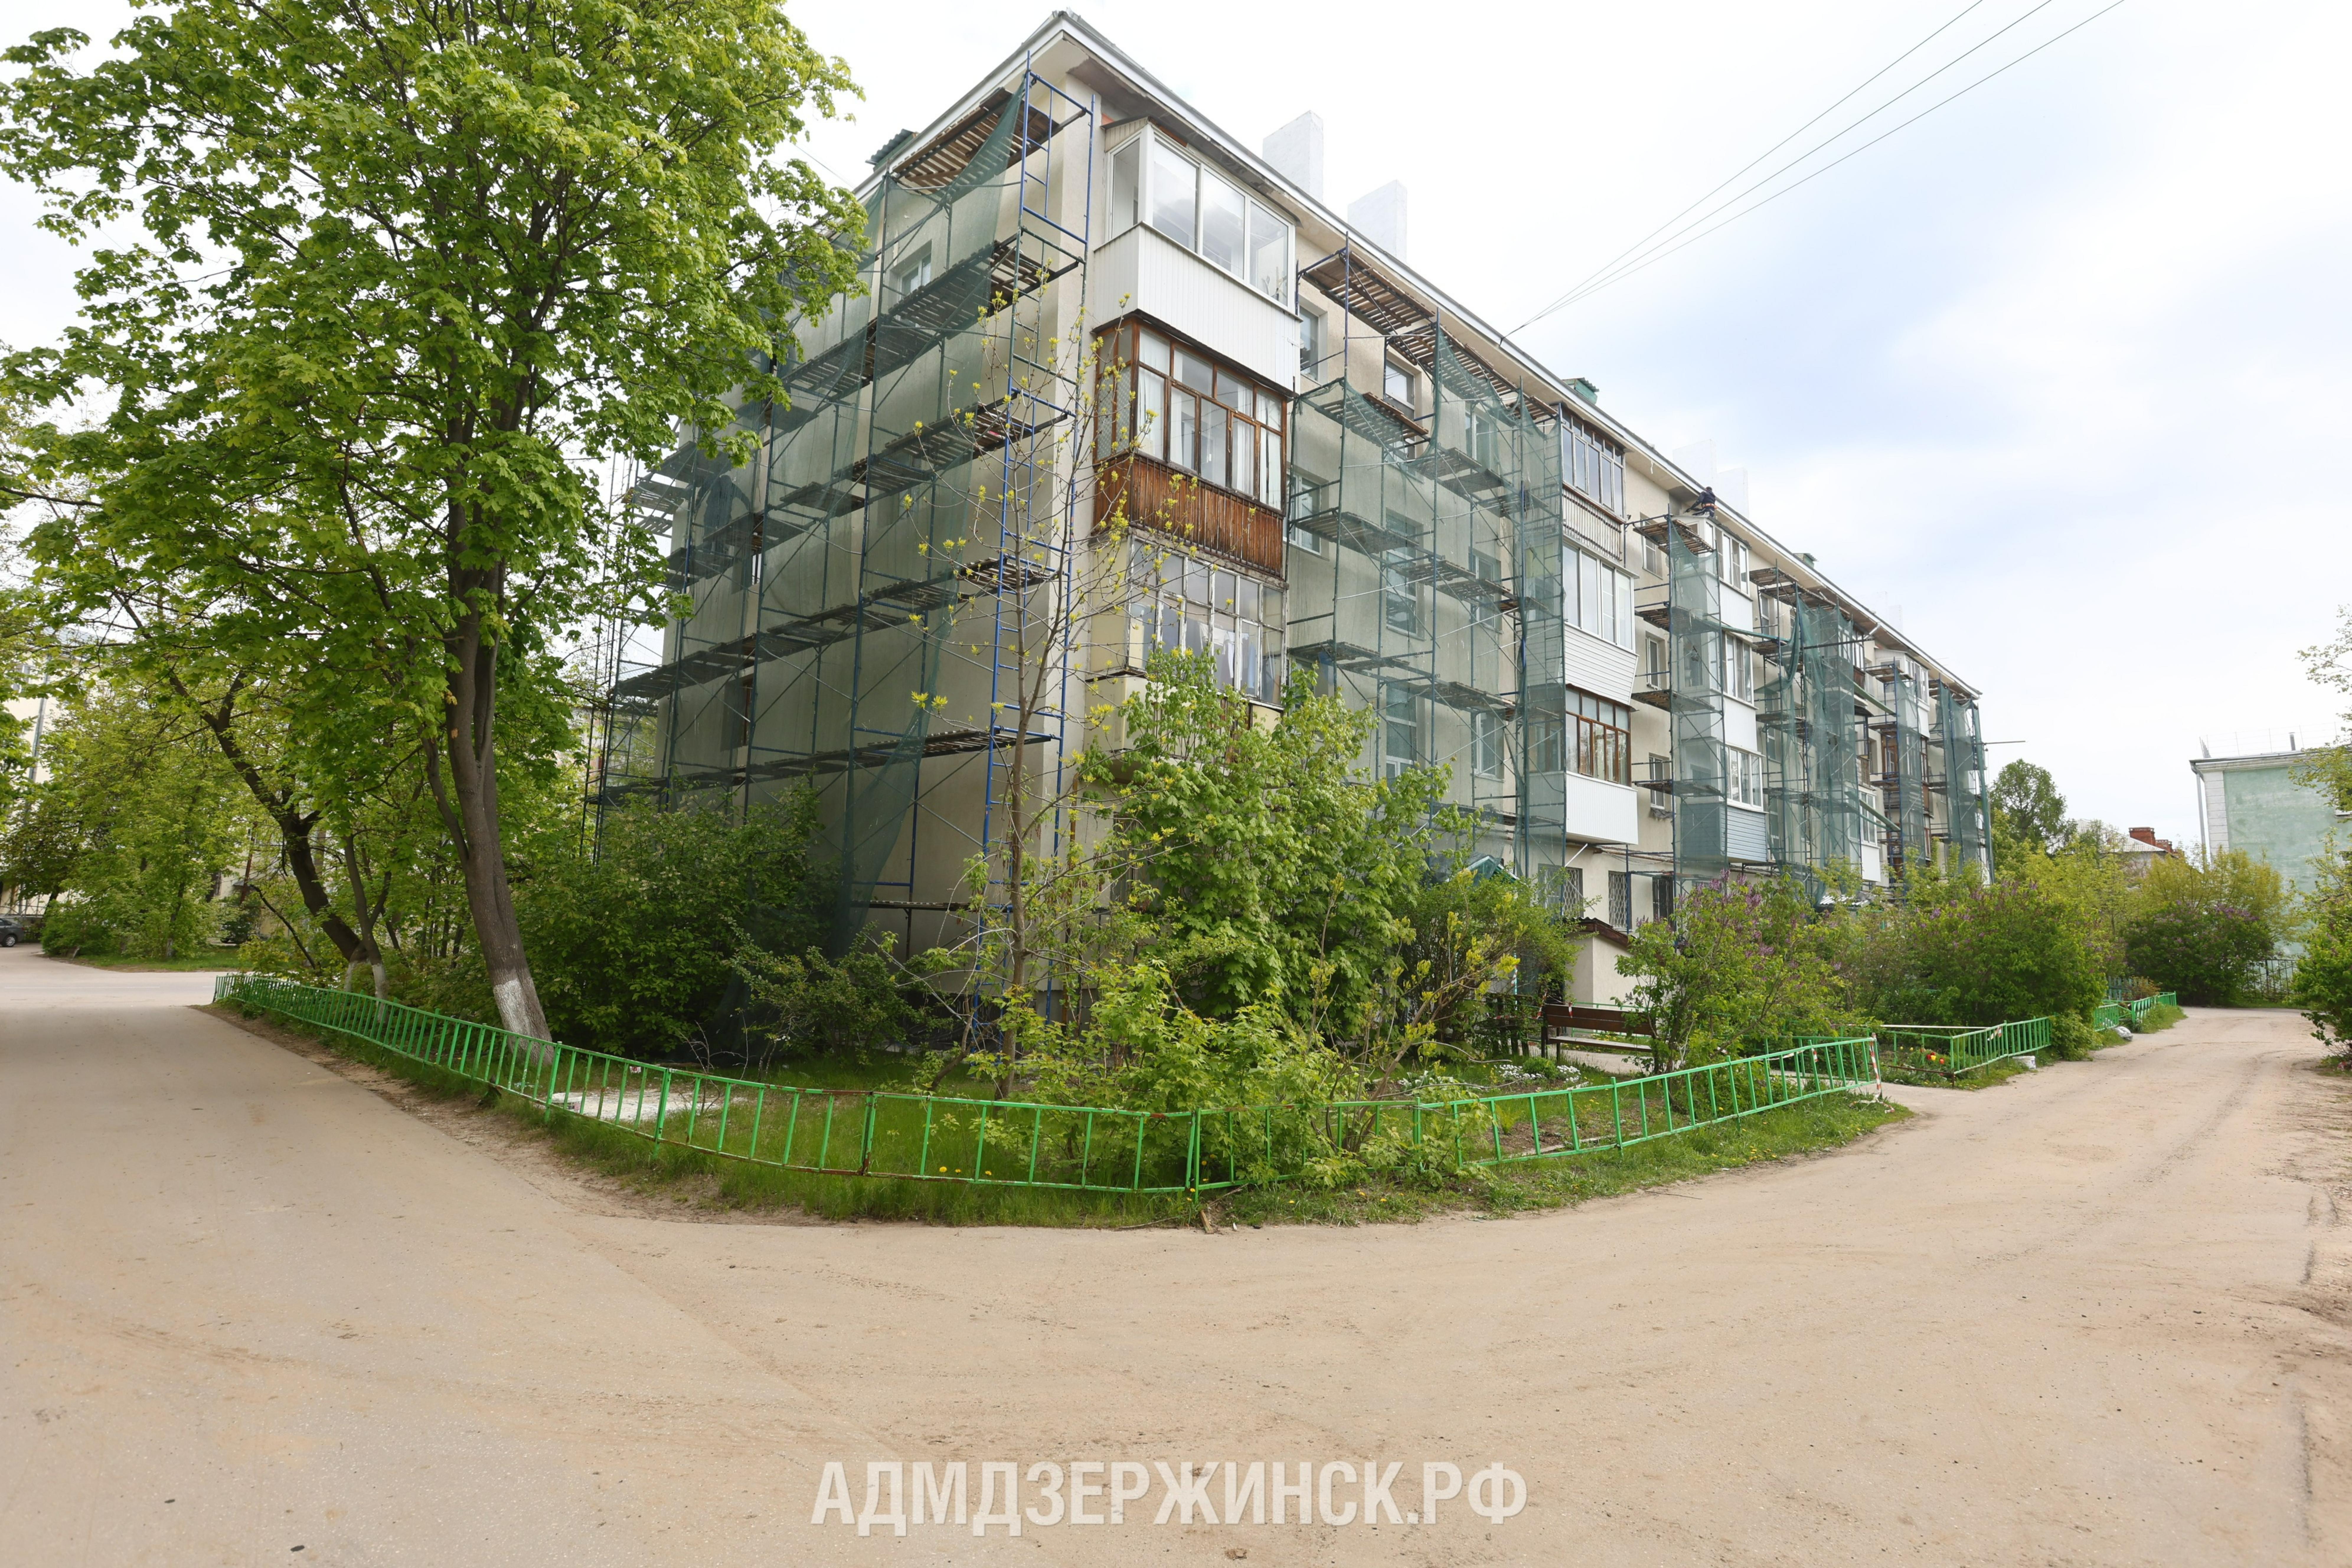 Программа капремонта многоквартирных домов в Дзержинске выполнена на 31%